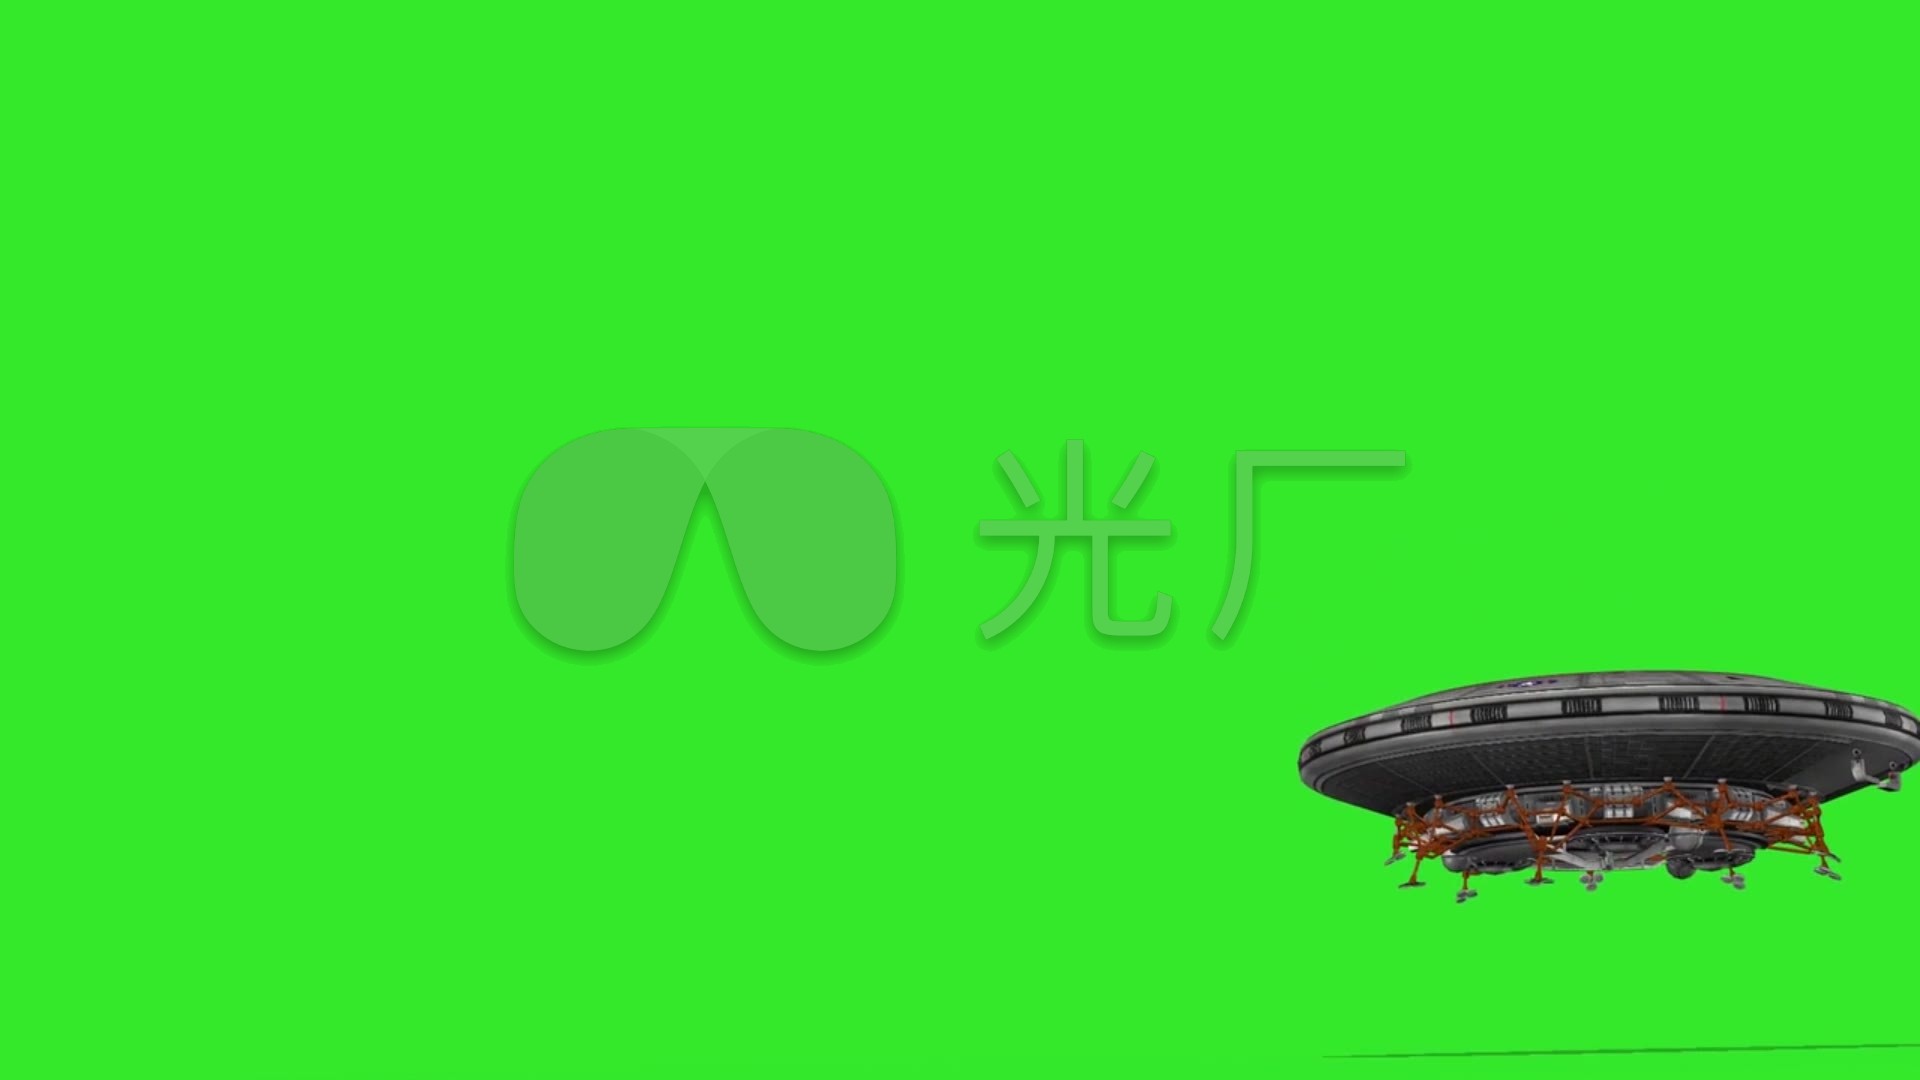 飞碟ufo宇宙飞船起落绿幕抠像素材